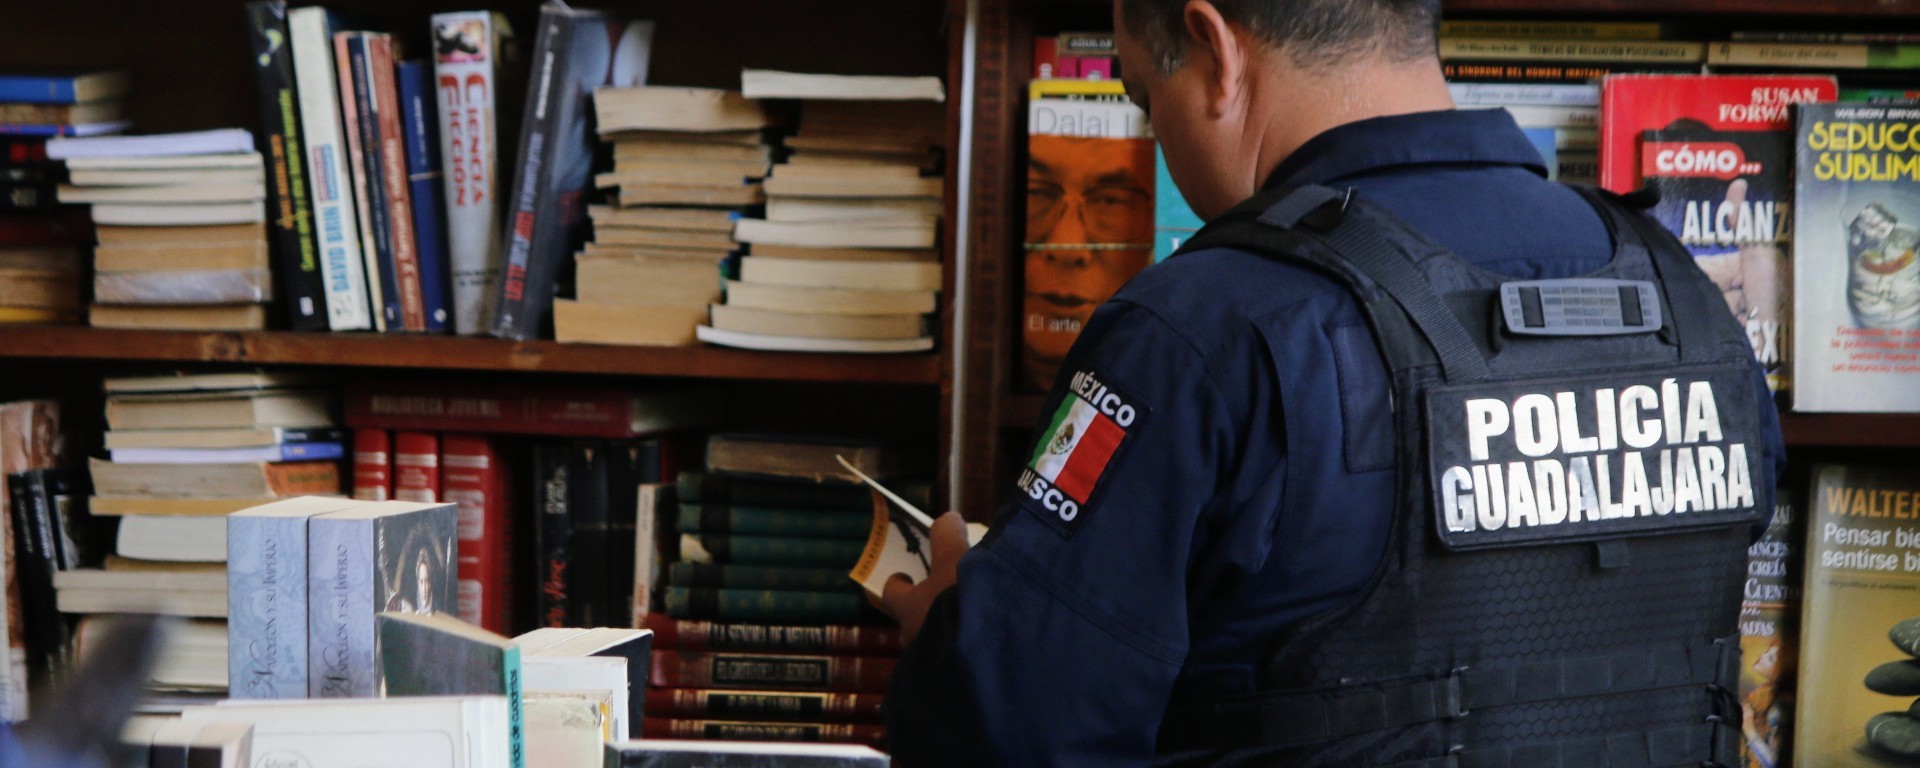 Policía de Guadalajara consulta un libro